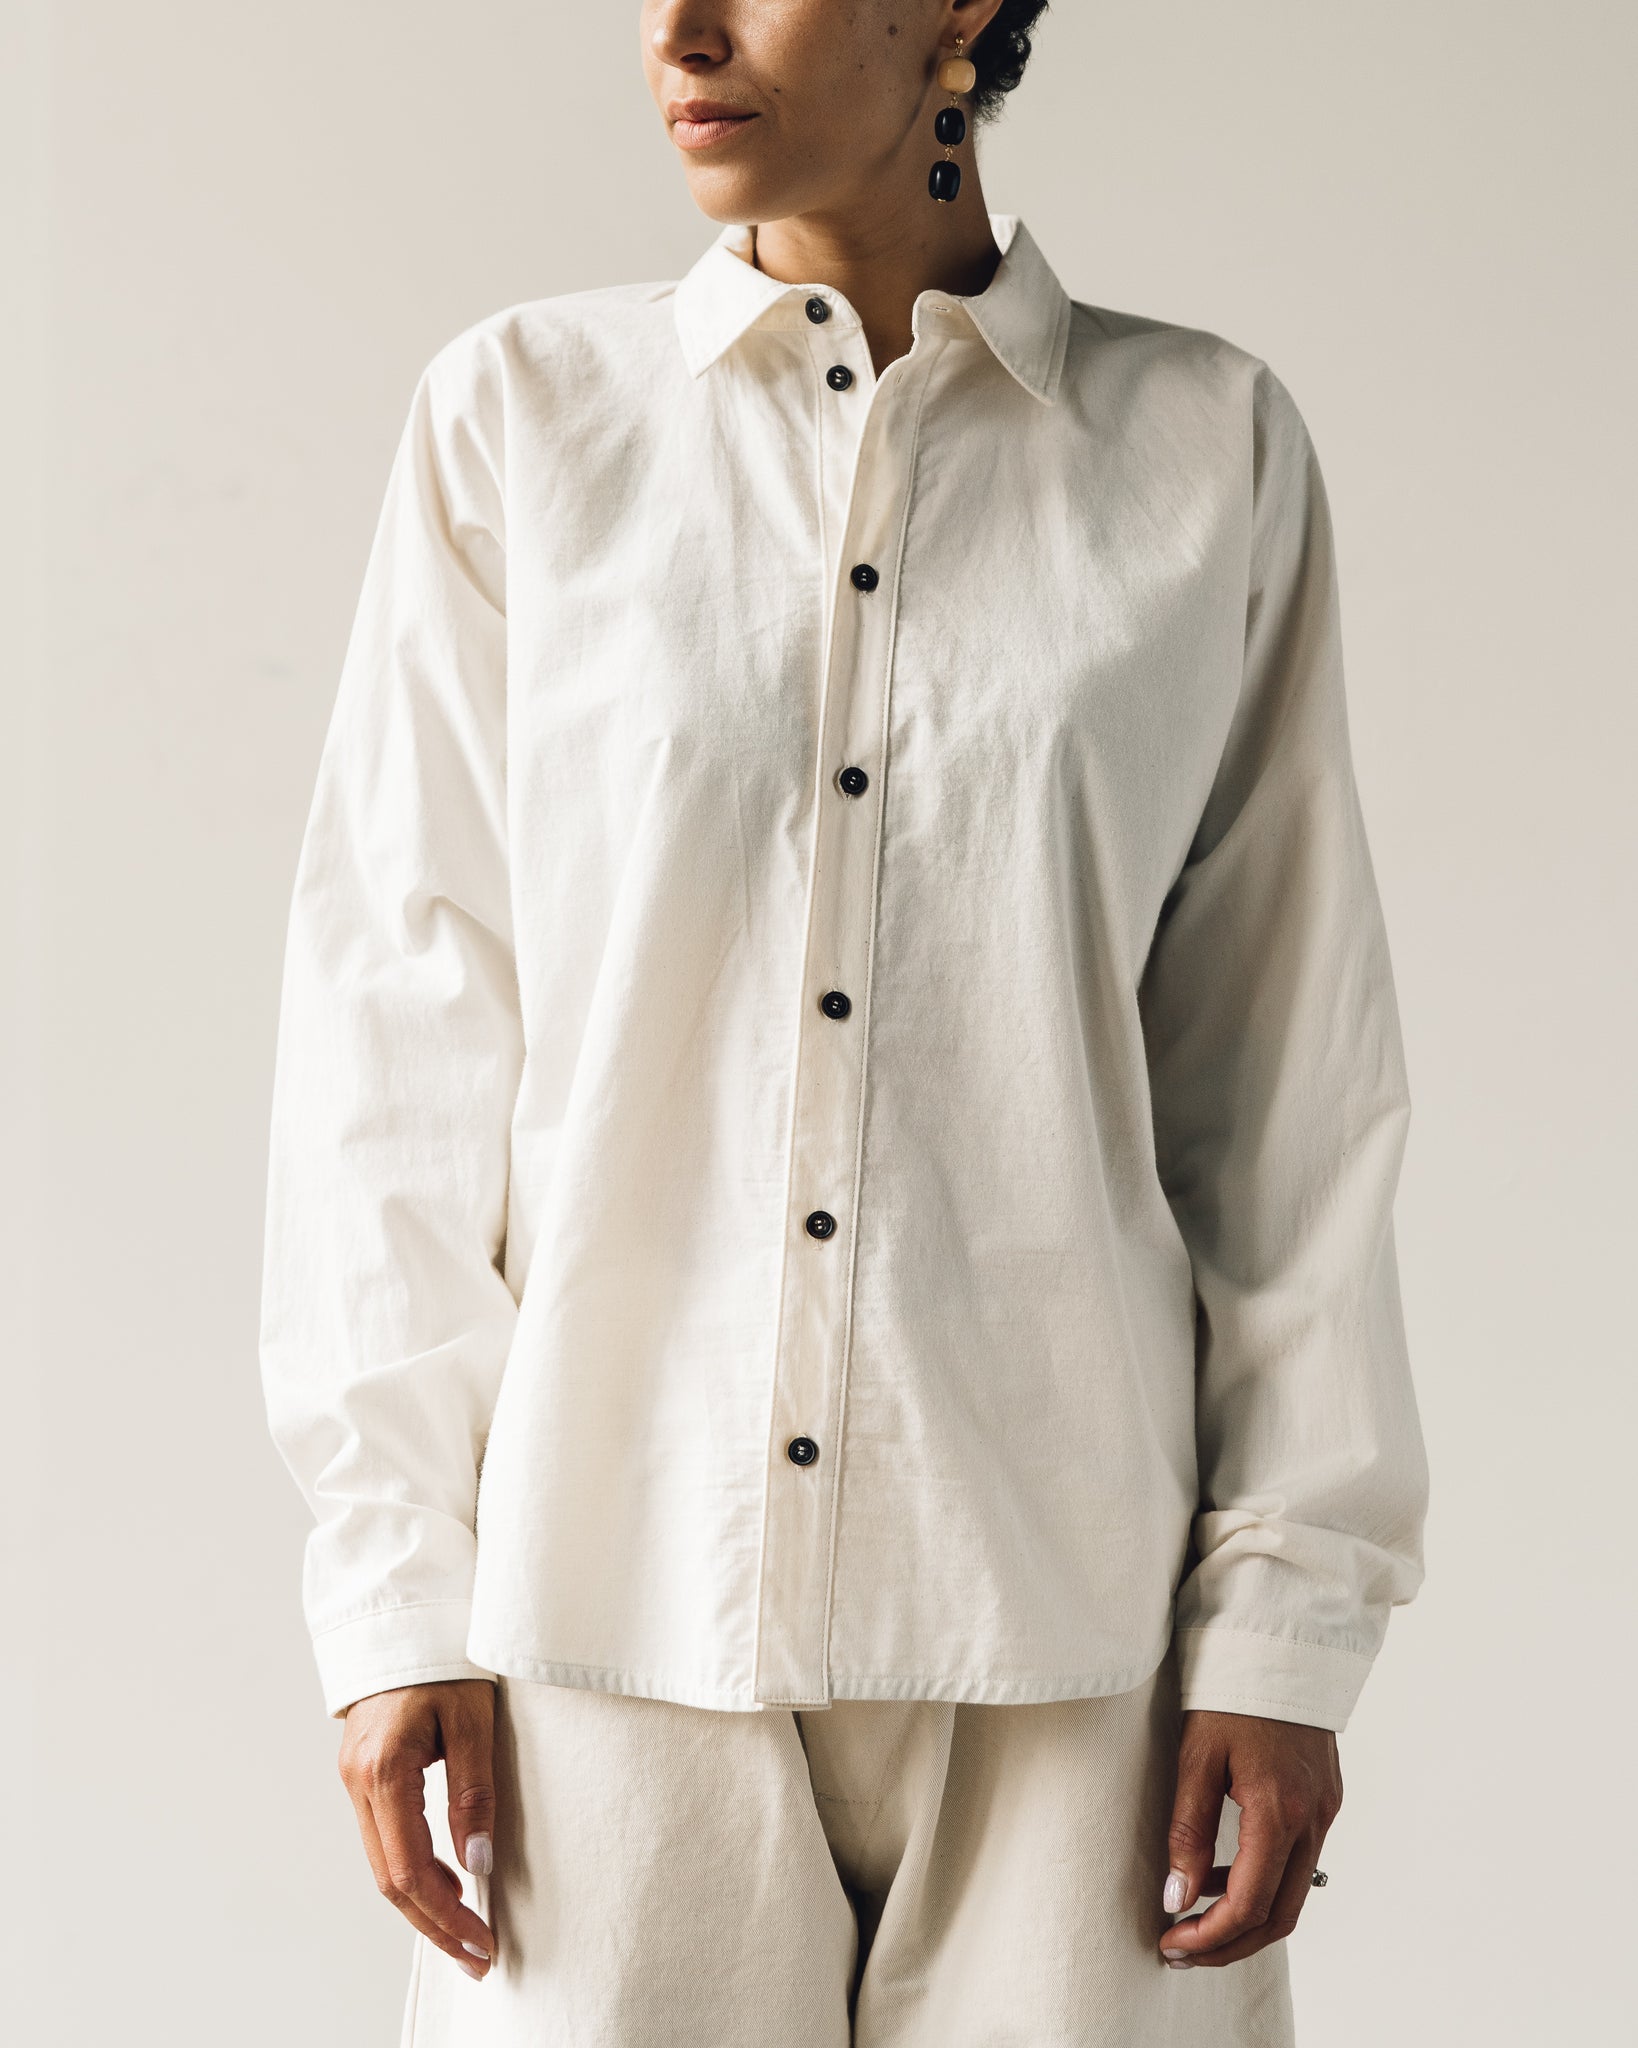 Jan-Jan Van Essche Shirt #69, Natural Light Buff Cotton